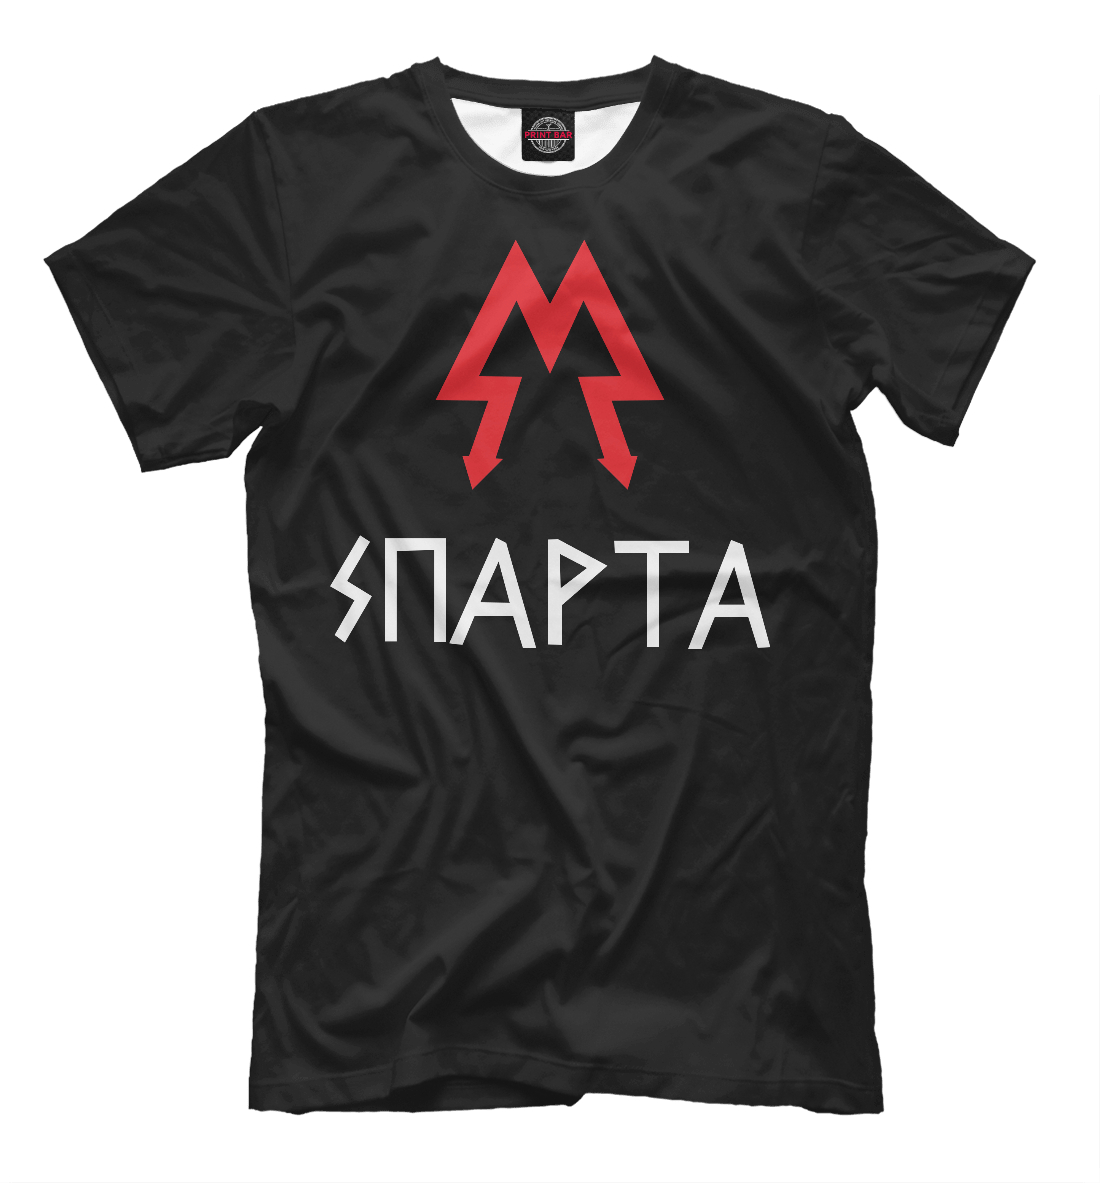 Мужская футболка с принтом Metro 2033 Starta